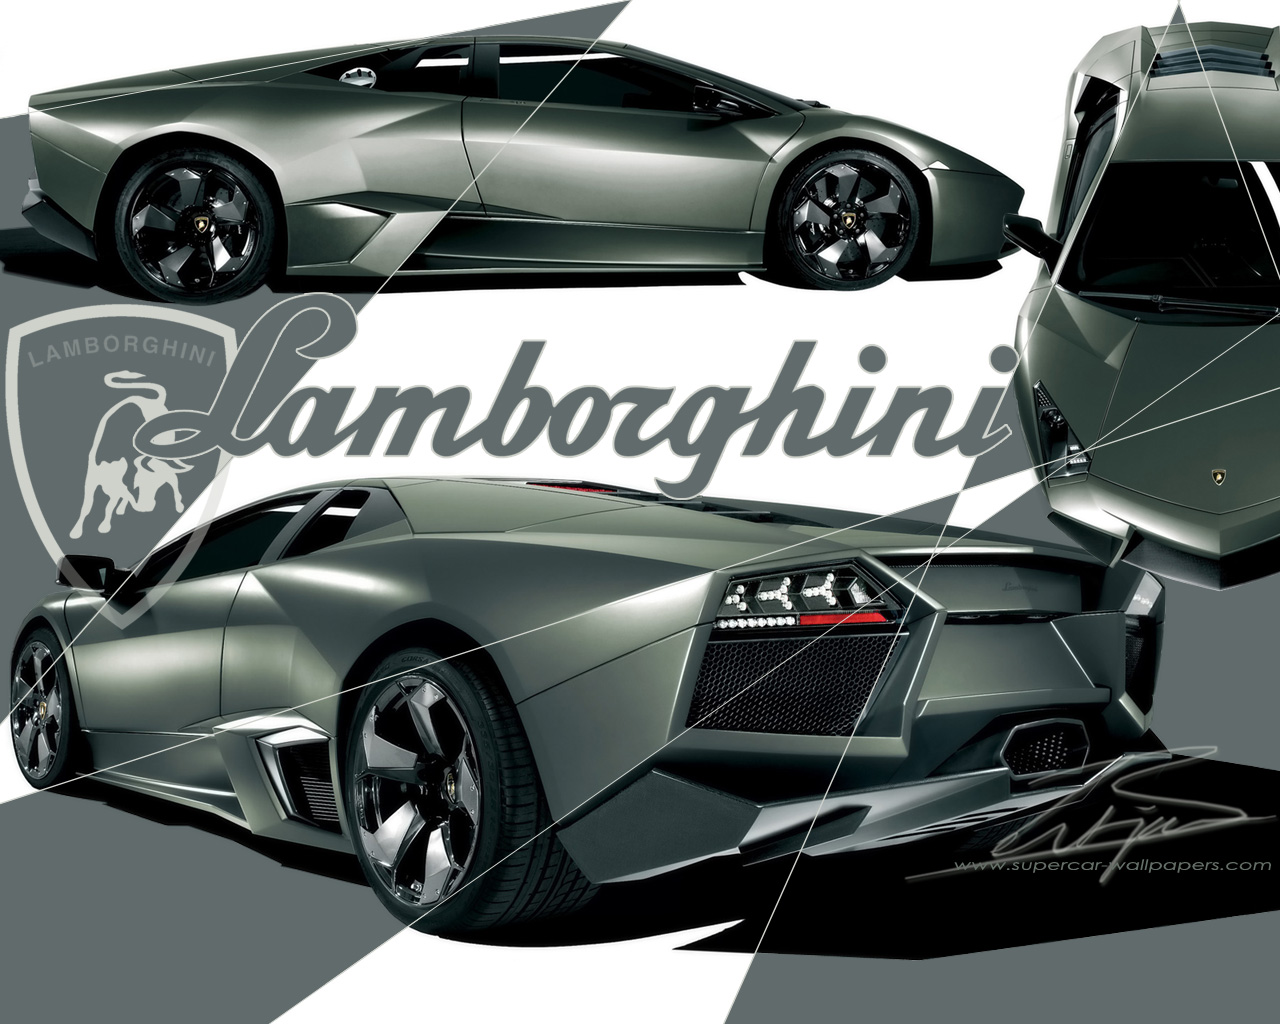 https://blogger.googleusercontent.com/img/b/R29vZ2xl/AVvXsEjf-ibgPe0CqNNNNx0_cK1AwRf7mL1FUHUTcgeAYzGu1pAFSSmFAnLKmL9b3Fp25jiMjDAka47kT6ojA5MD5OXR8mt8ctEpC9qeEPvdvlnms4Ei80GribCRYVuQtGGPa0MKCNIgbSHVwAtC/s1600/Lamborghini-Reventon.jpg